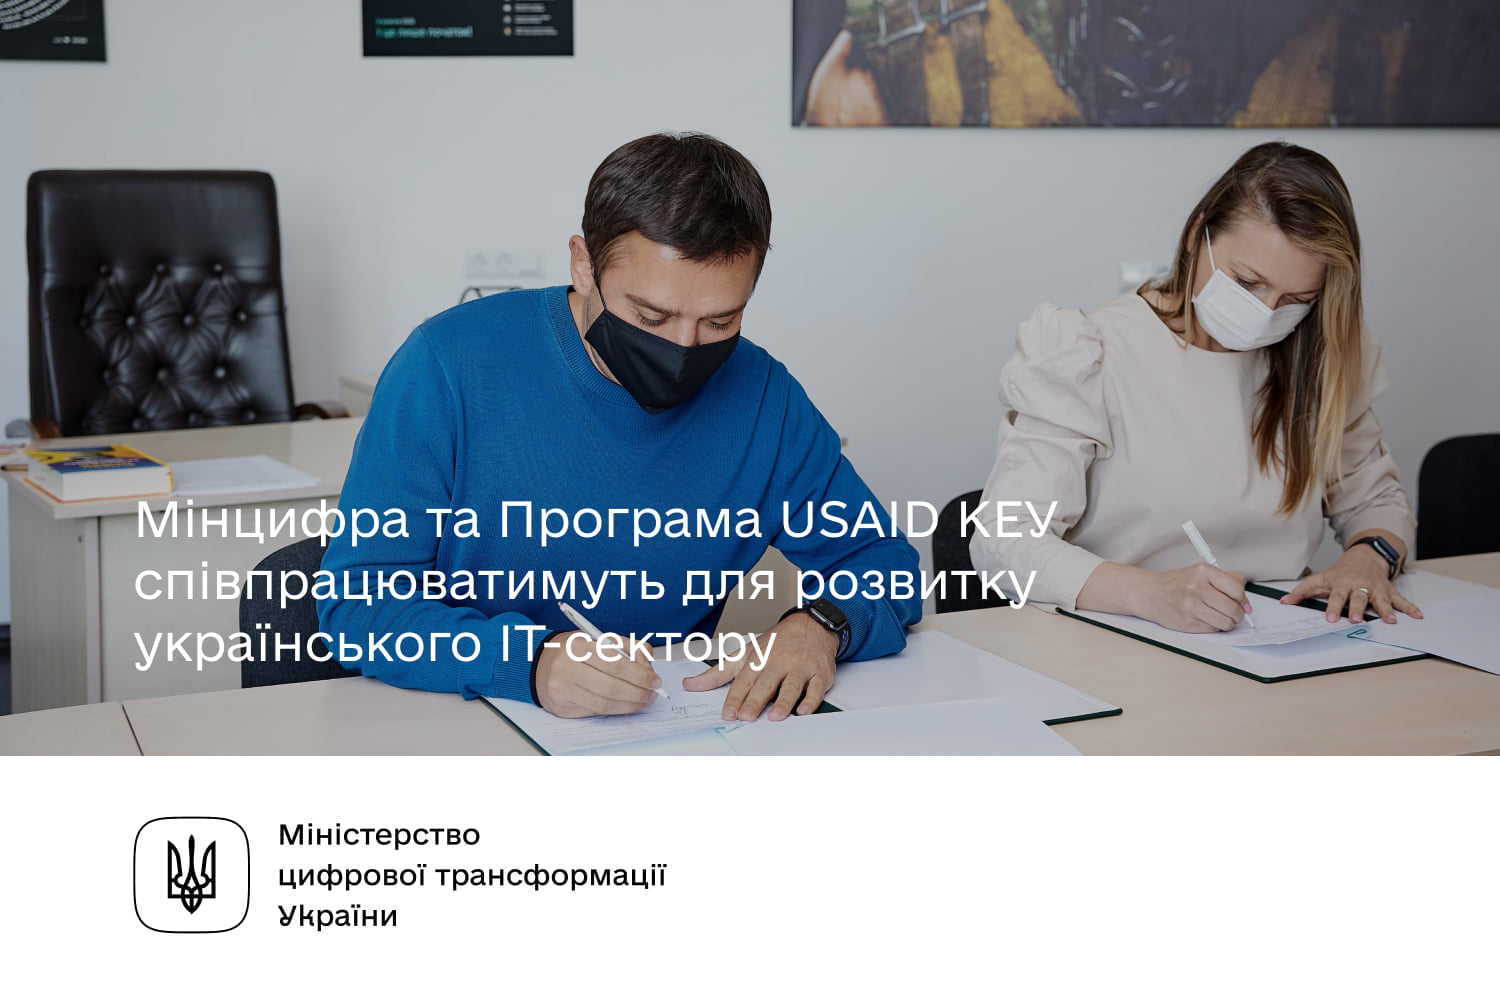 Розвиток українського IT-сектору